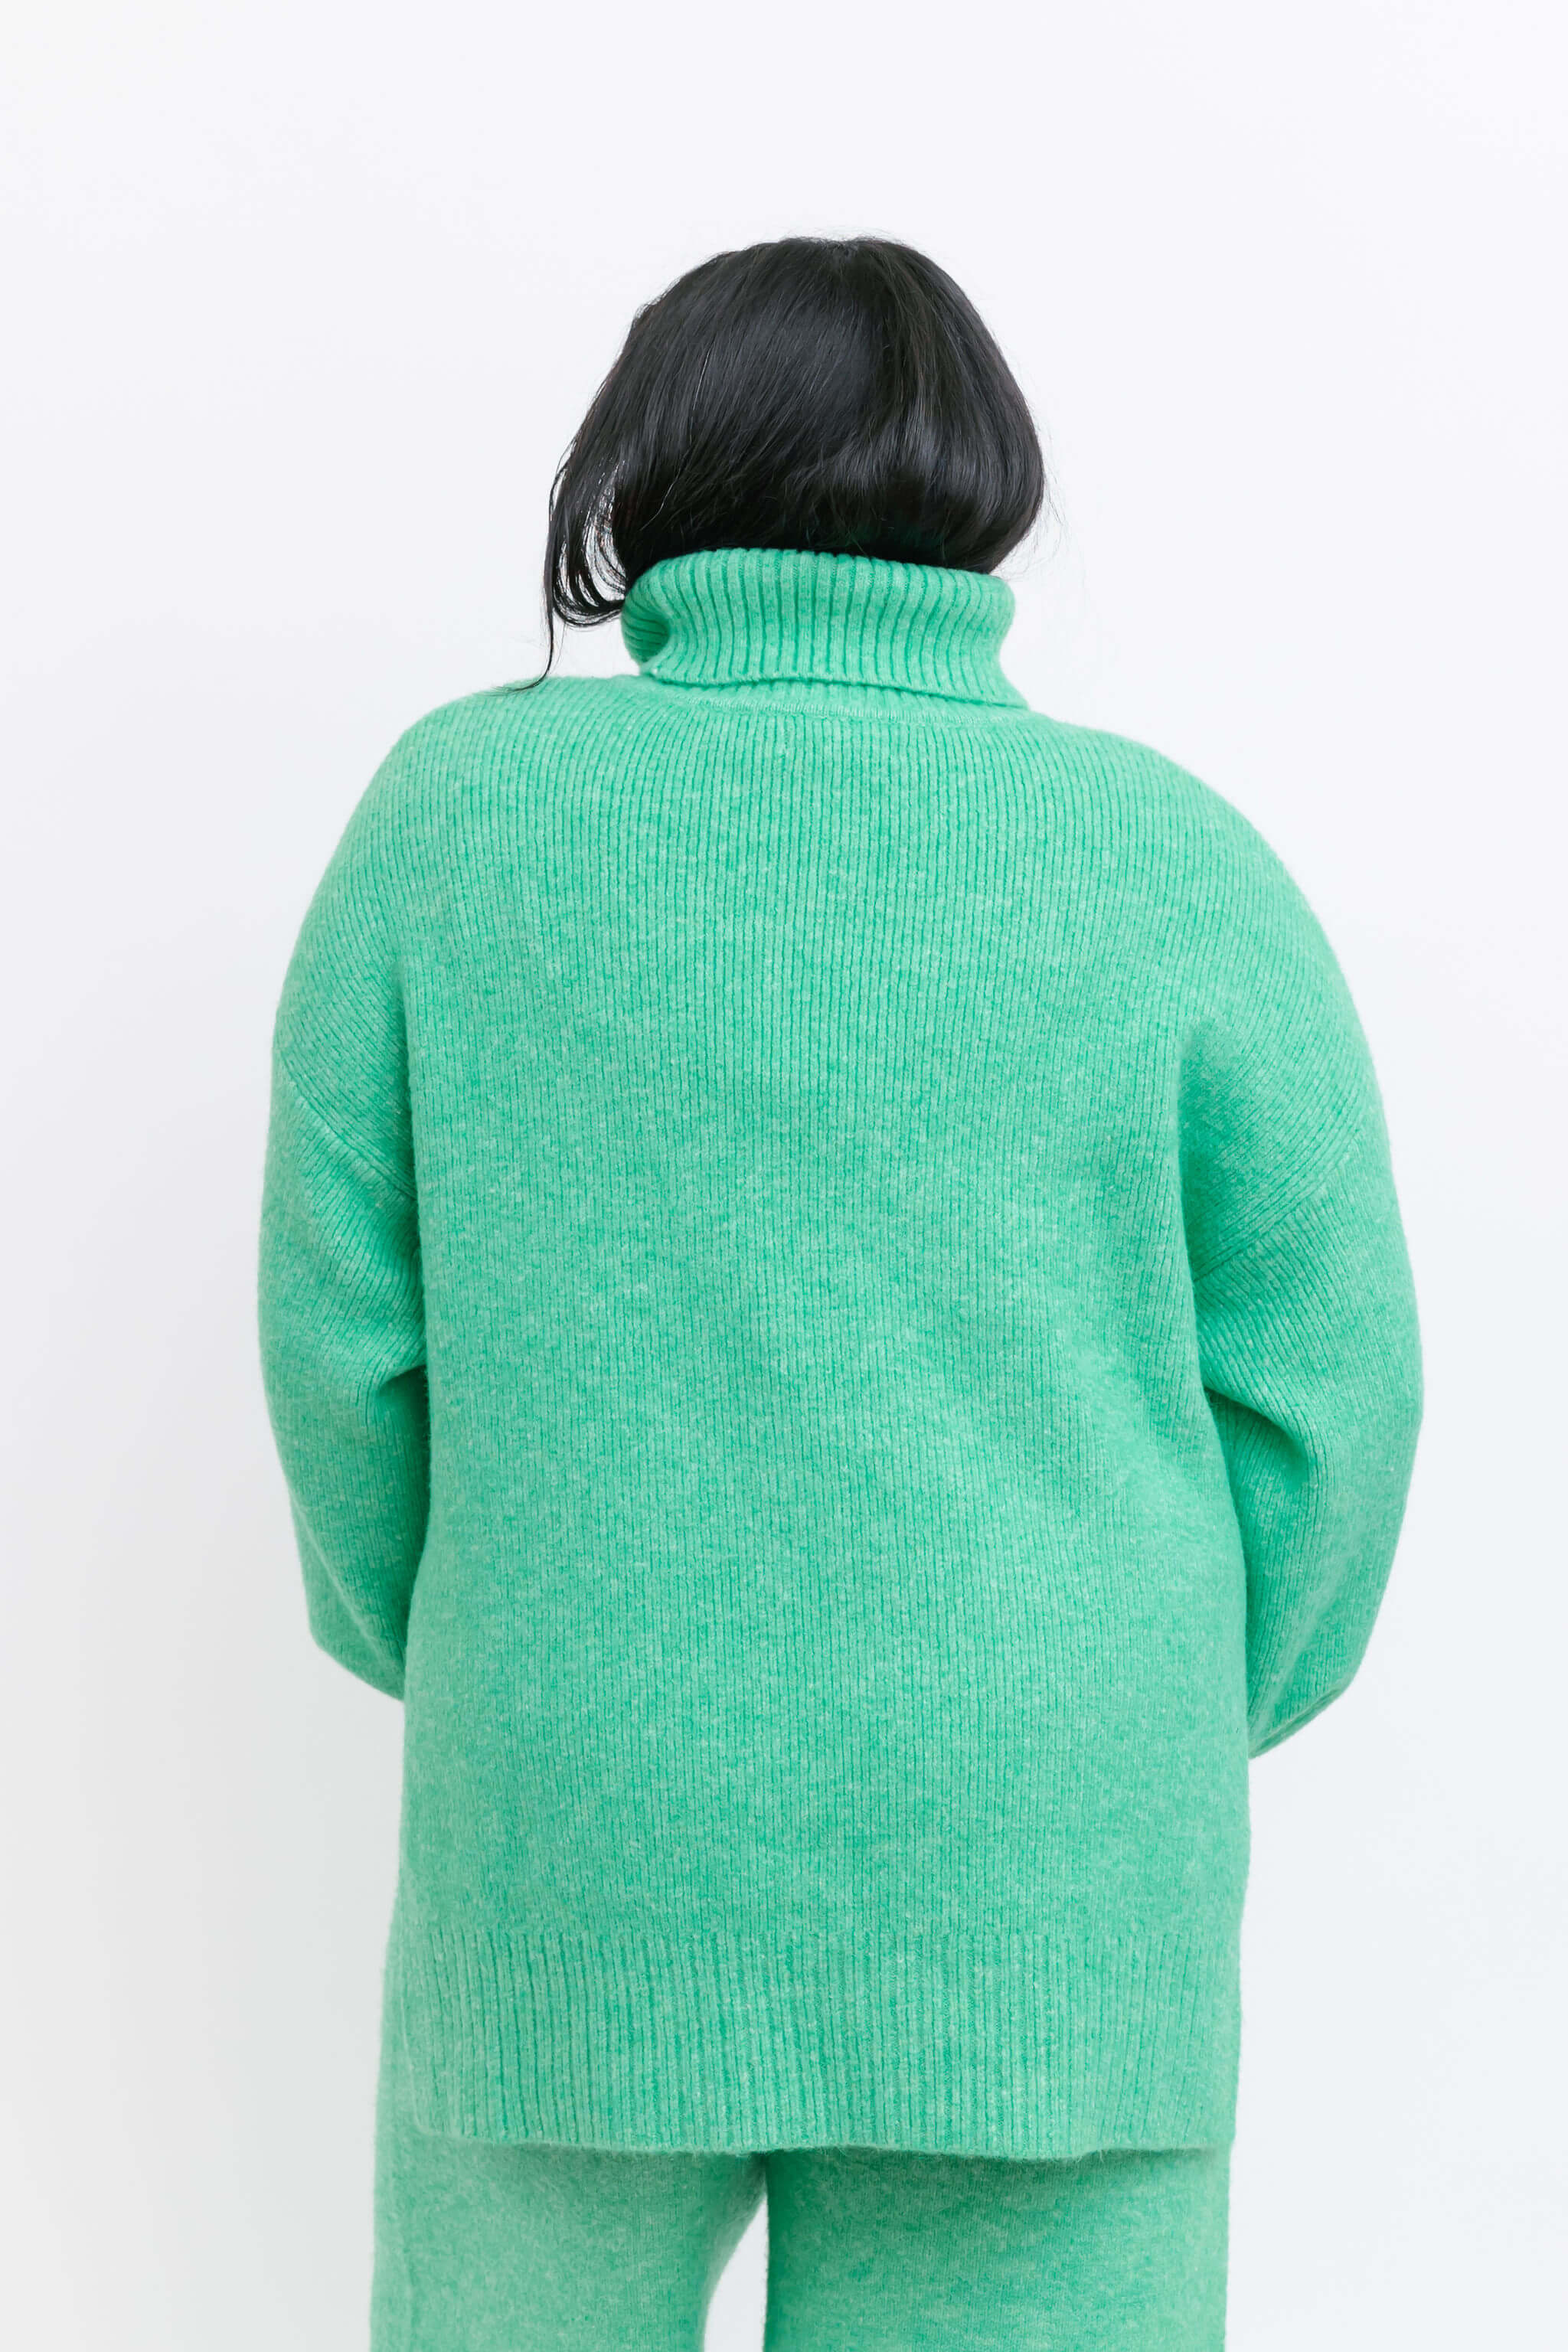 Smash + Tess Loren Turtleneck Sweater in Emerald Green